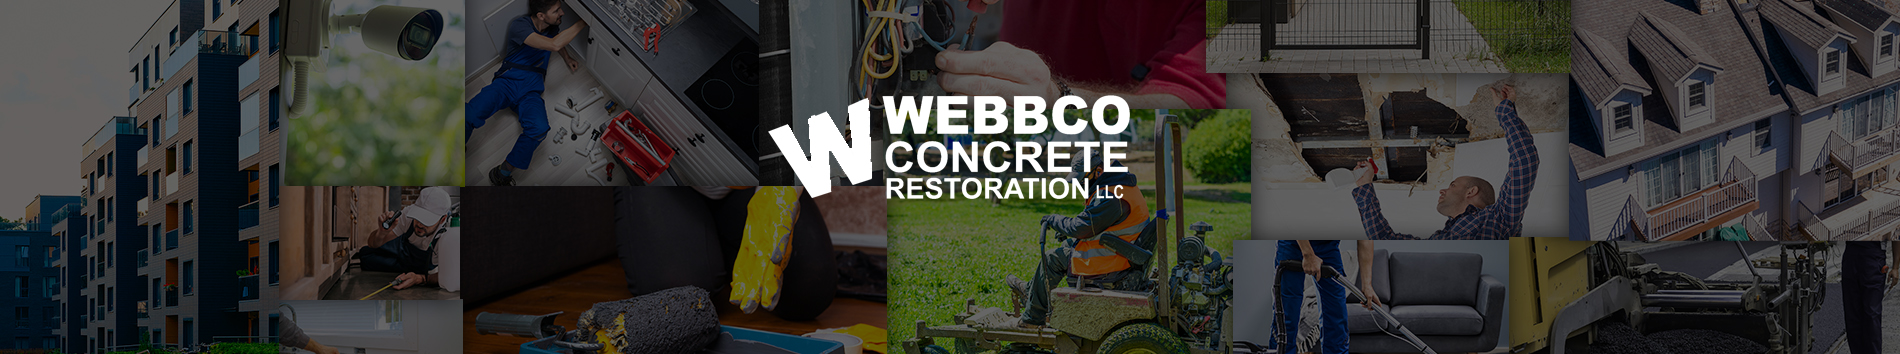 Webbco Concrete Restoration